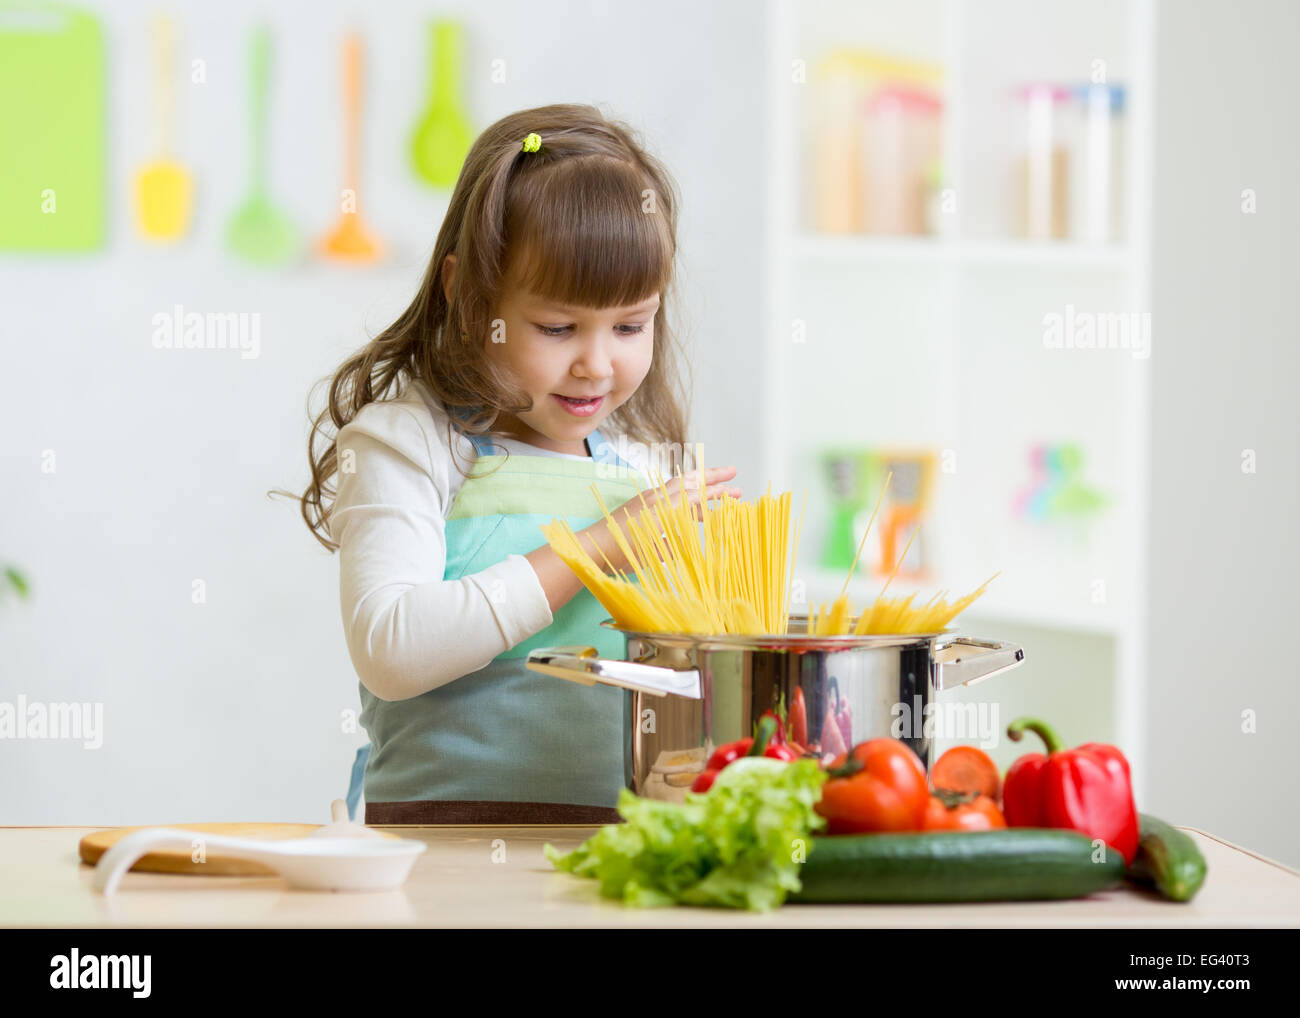 Chico Chica jugando a cocinar y preparar espaguetis Foto de stock